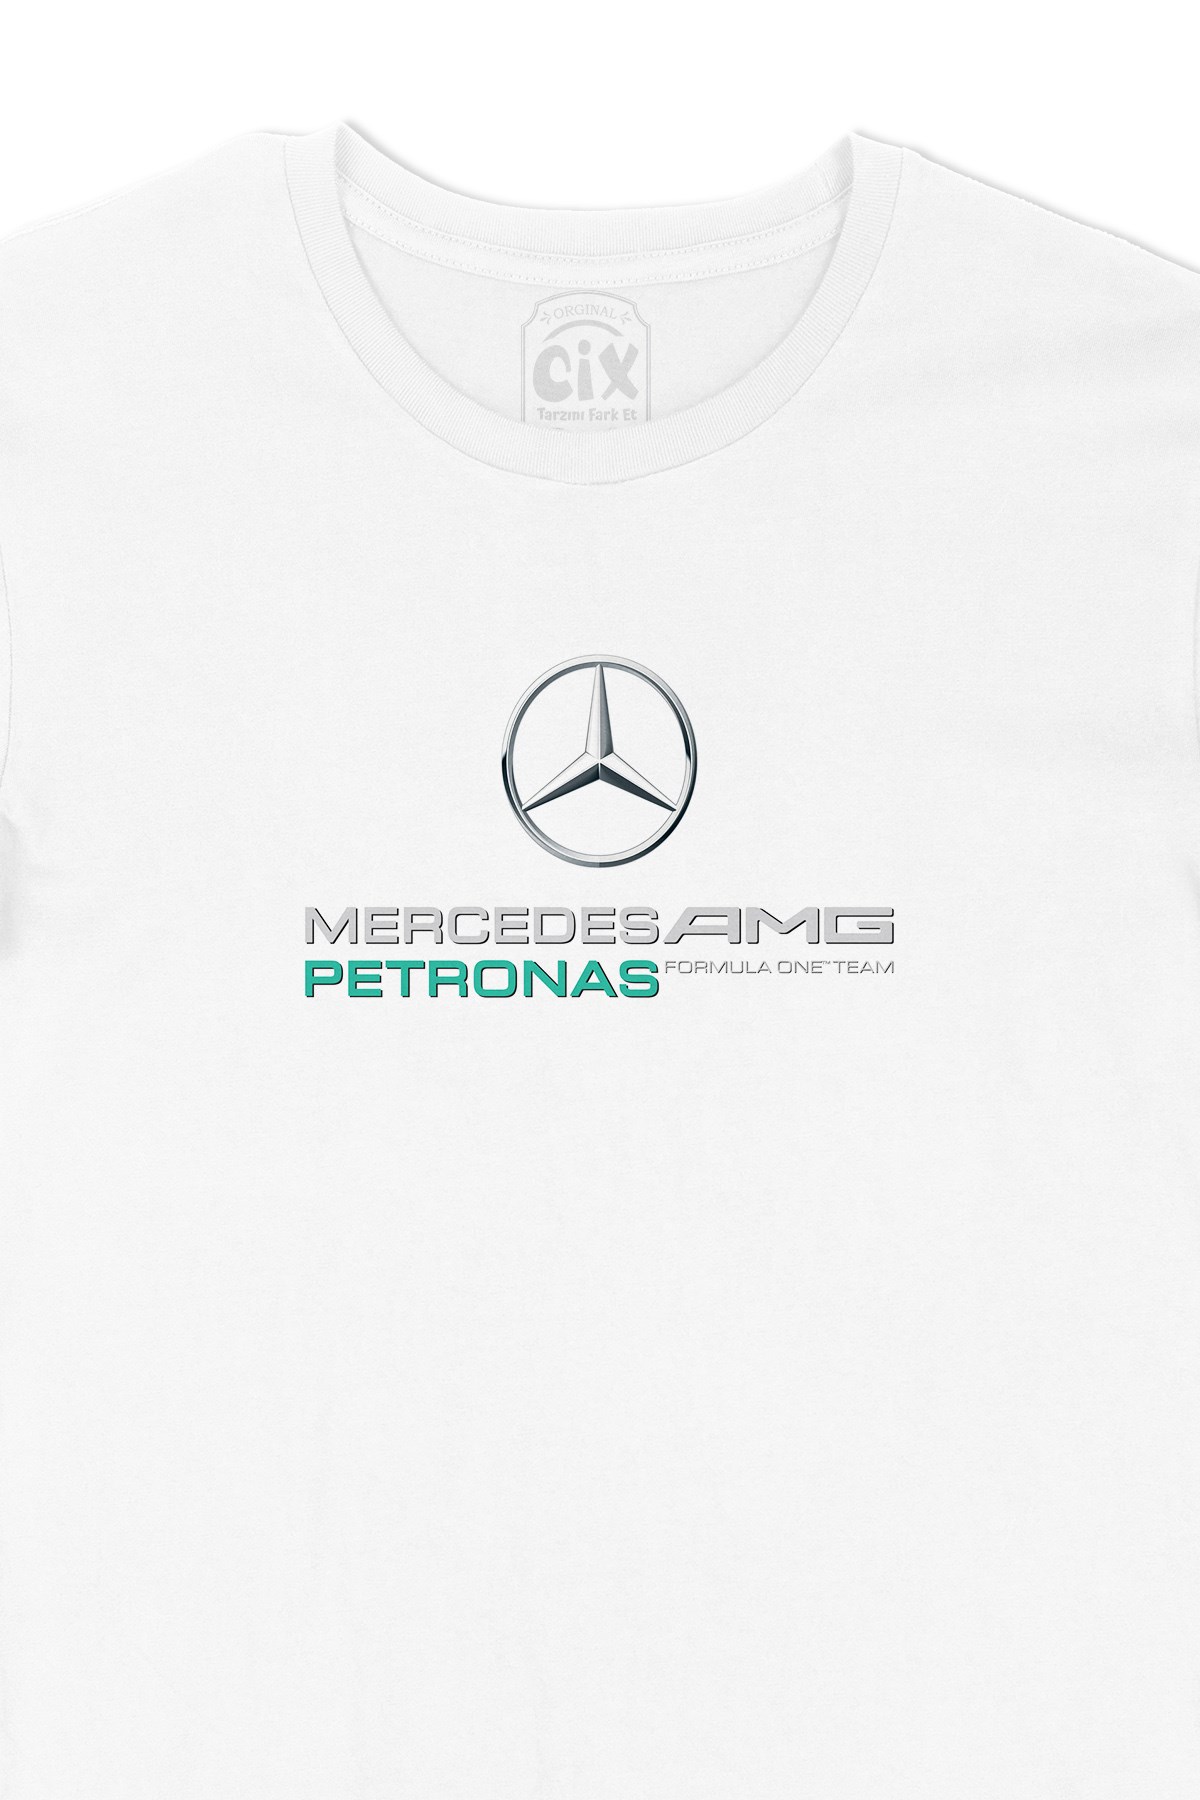 Cix F1 Mercedes AMG Petronas Tişört - Ücretsiz Kargo